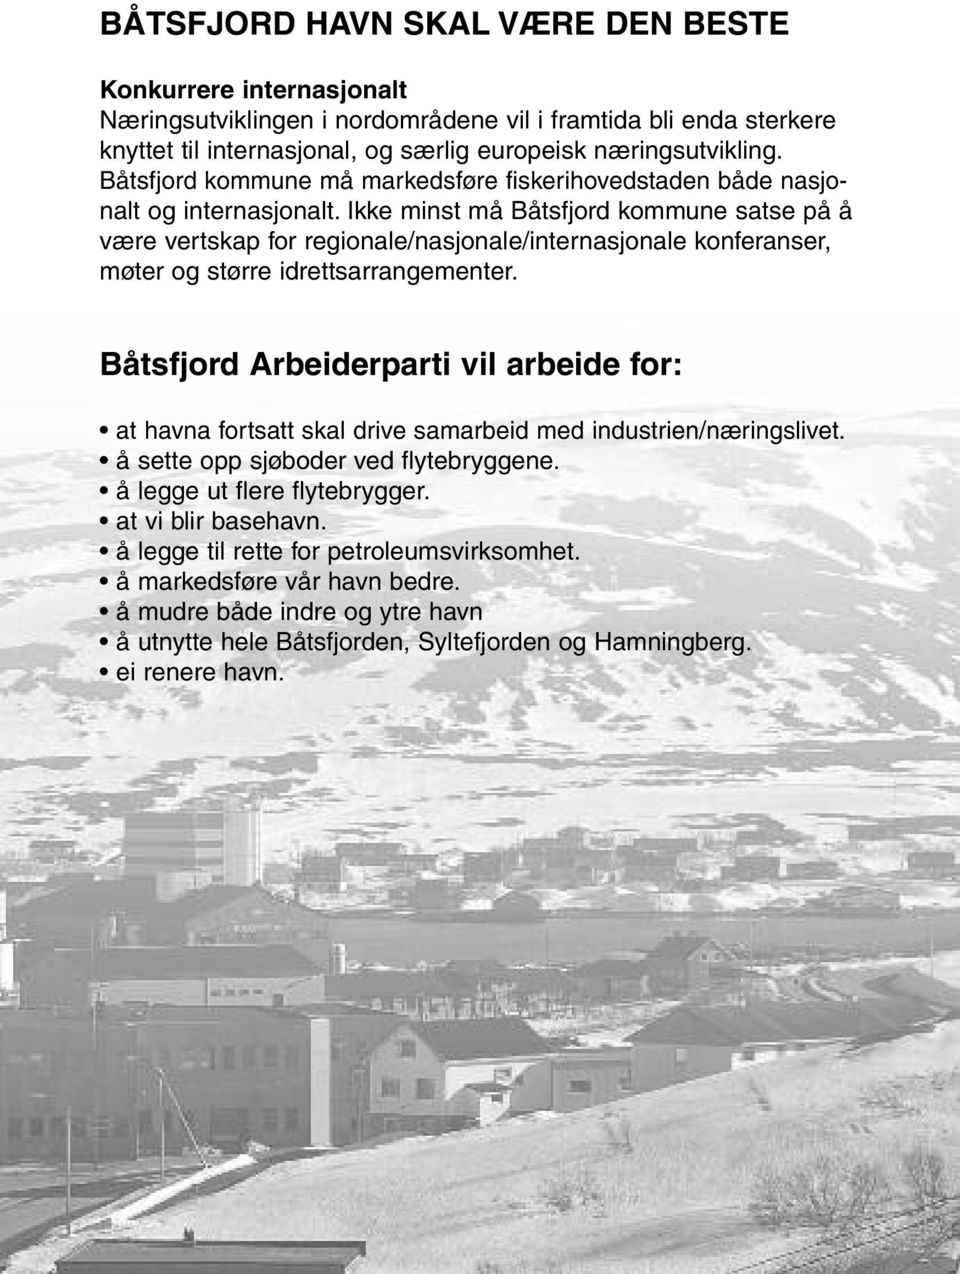 Ikke minst må Båtsfjord kommune satse på å være vertskap for regionale/nasjonale/internasjonale konferanser, møter og større idrettsarrangementer.